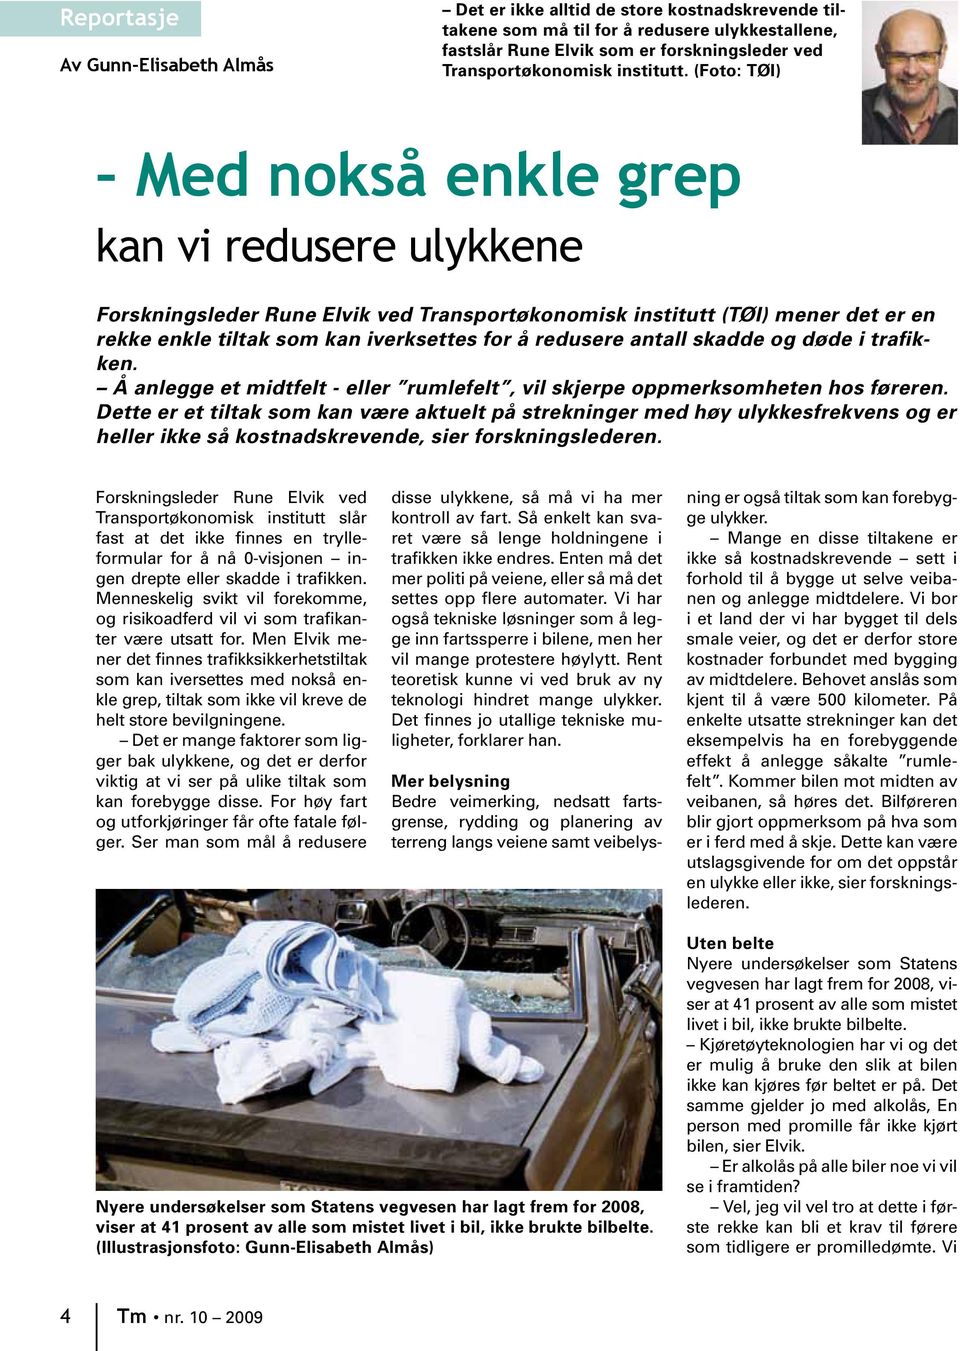 (Foto: TØI) Med nokså enkle grep kan vi redusere ulykkene Forskningsleder Rune Elvik ved Transportøkonomisk institutt (TØI) mener det er en rekke enkle tiltak som kan iverksettes for å redusere